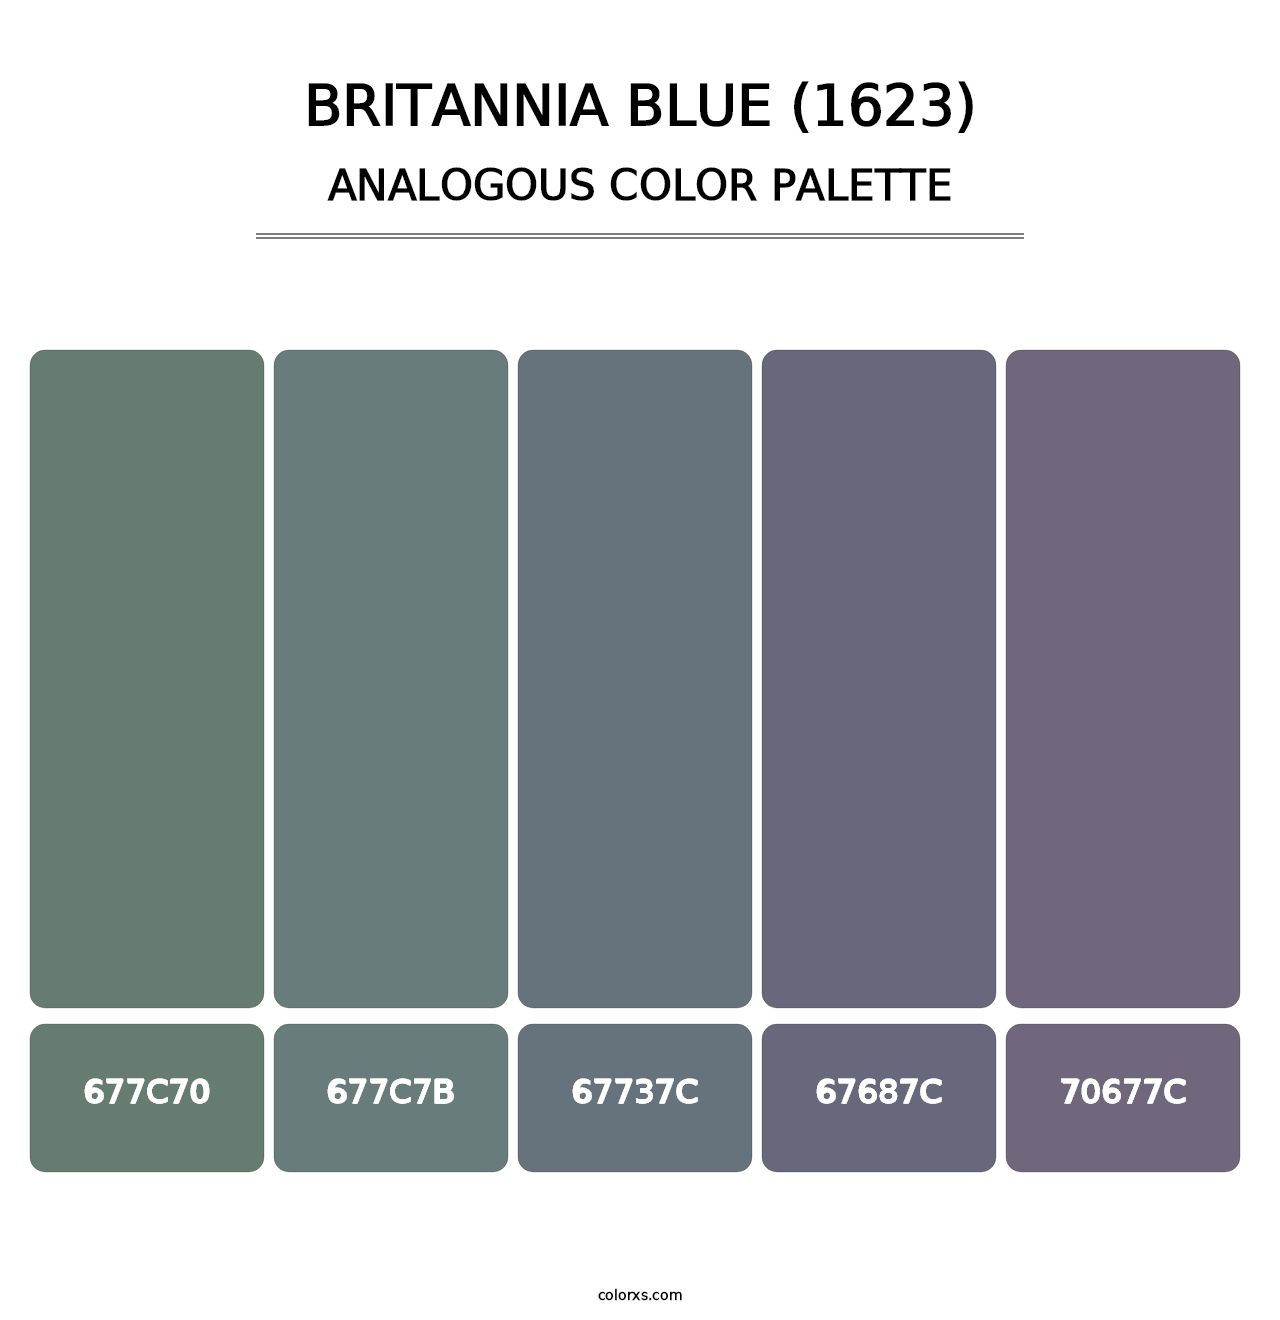 Britannia Blue (1623) - Analogous Color Palette